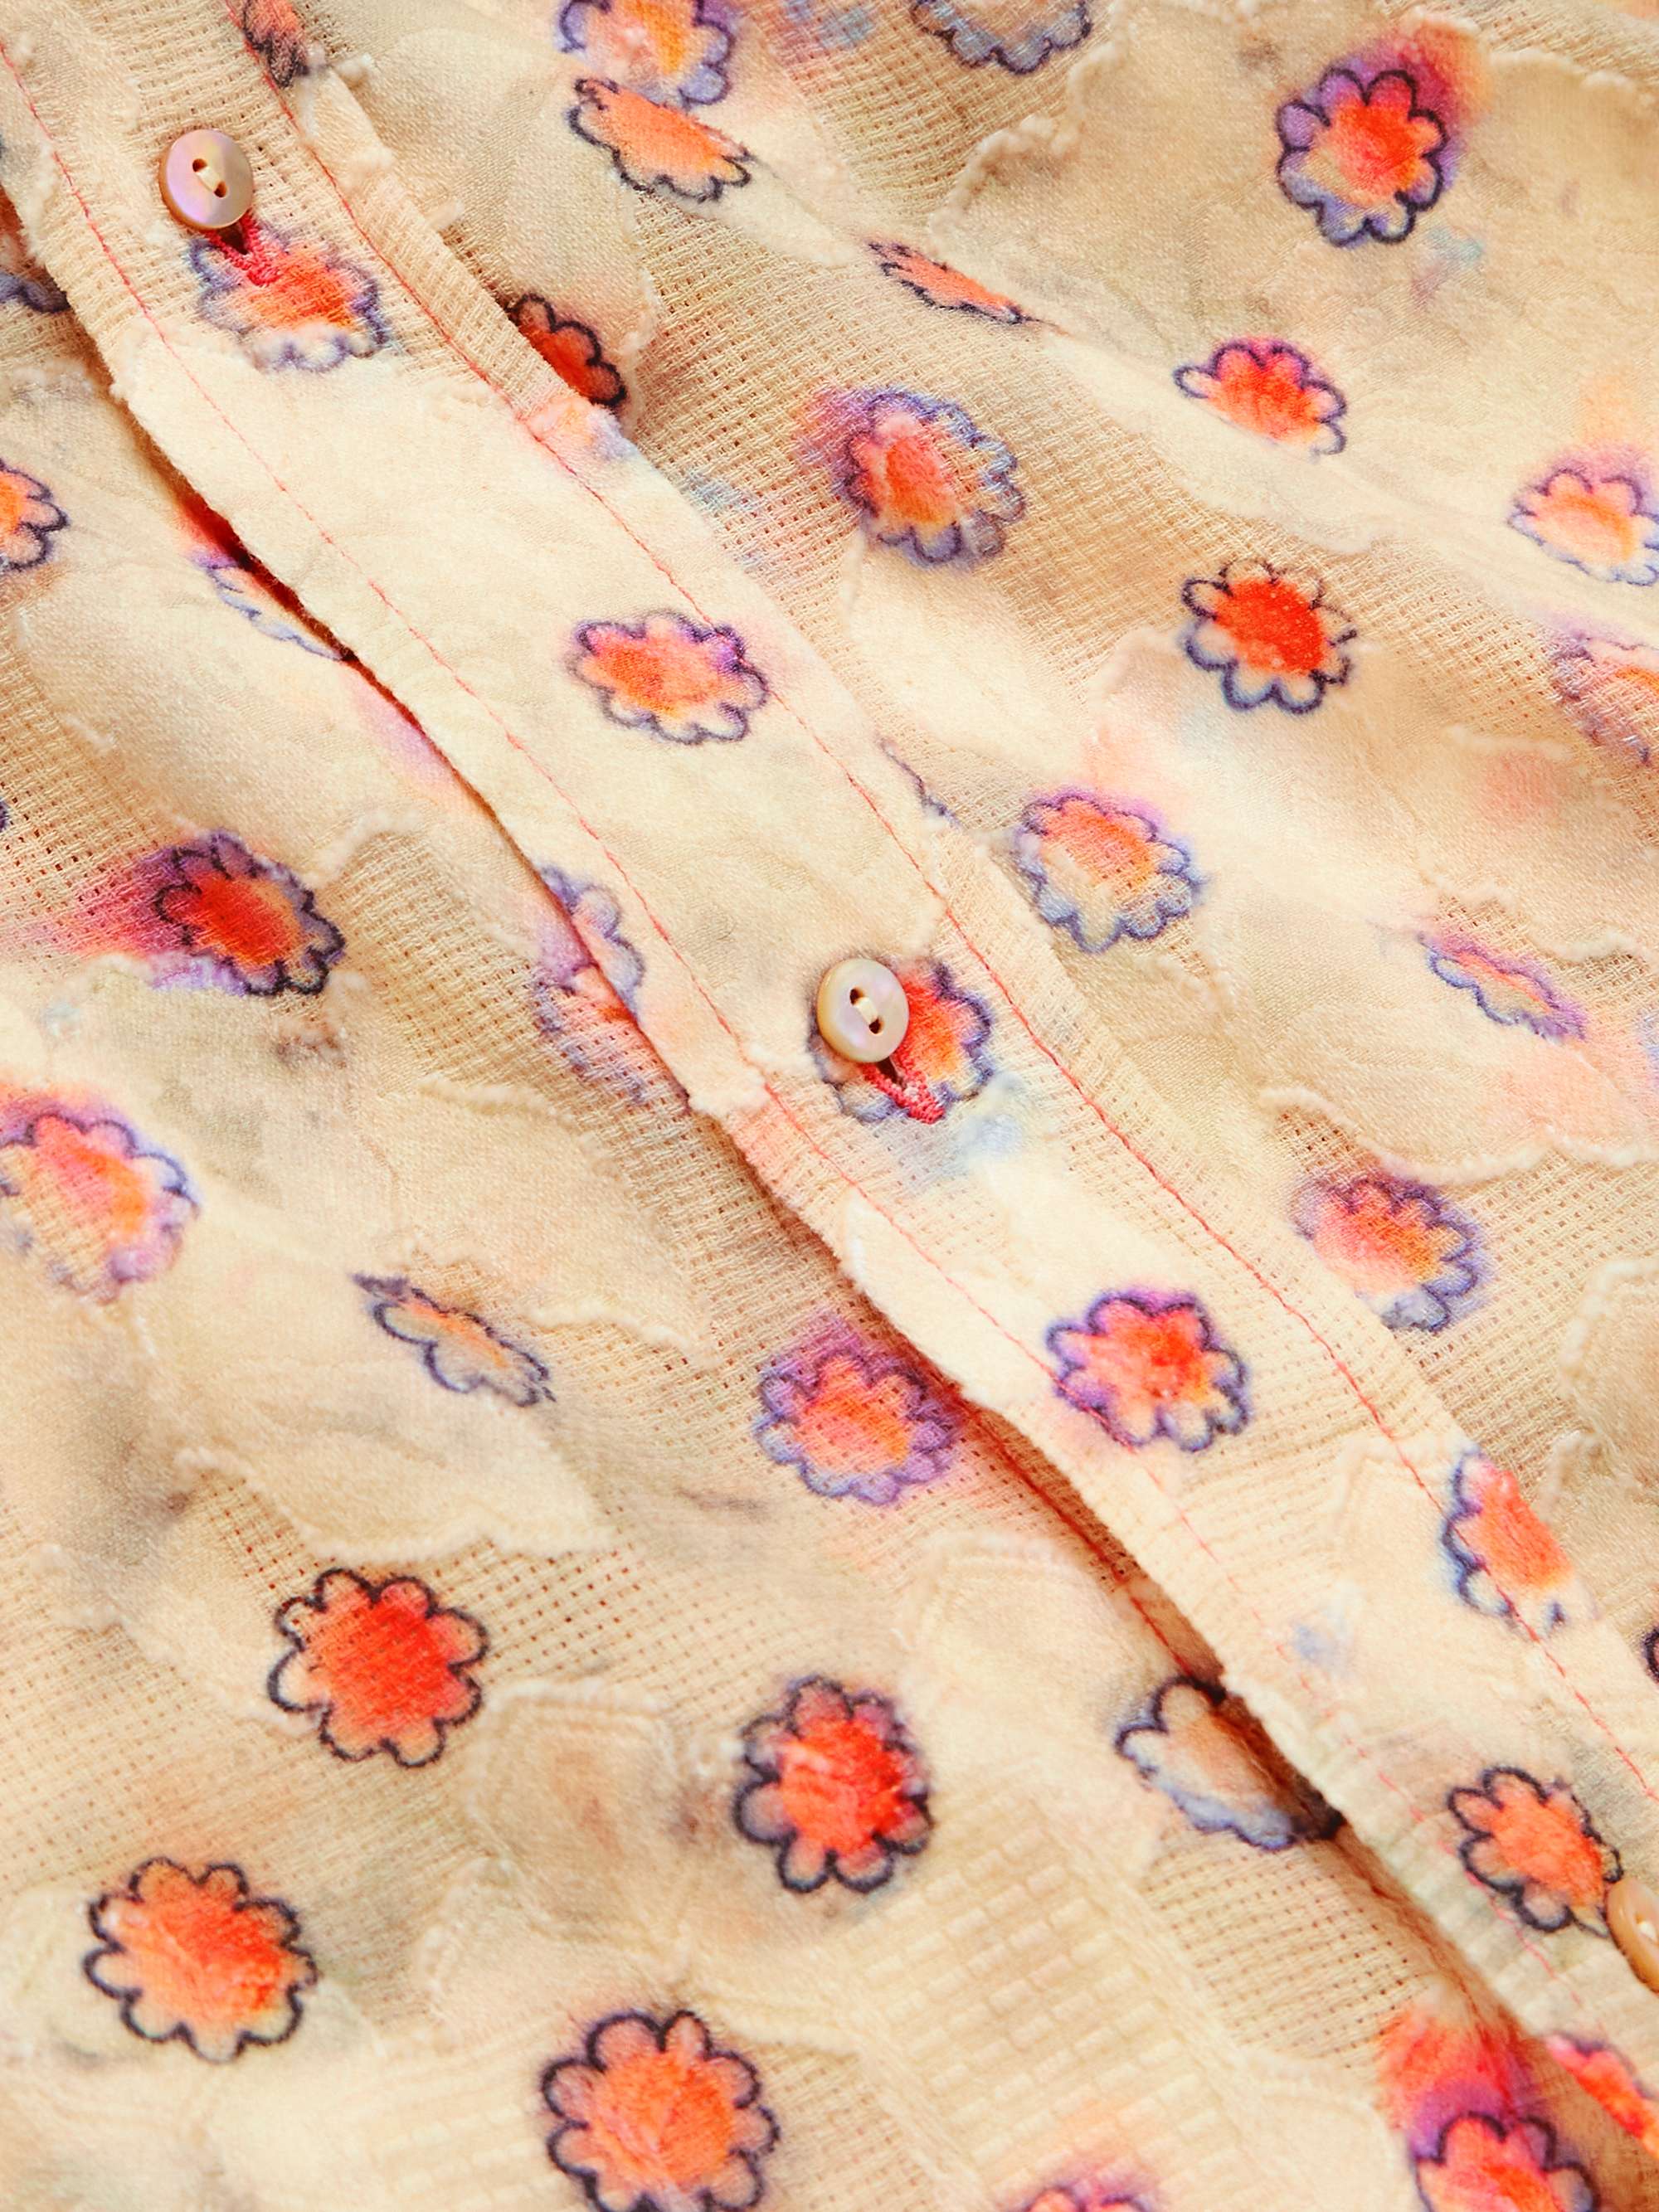 ACNE STUDIOS Siza Floral-Print Fil Coupé Cotton Shirt